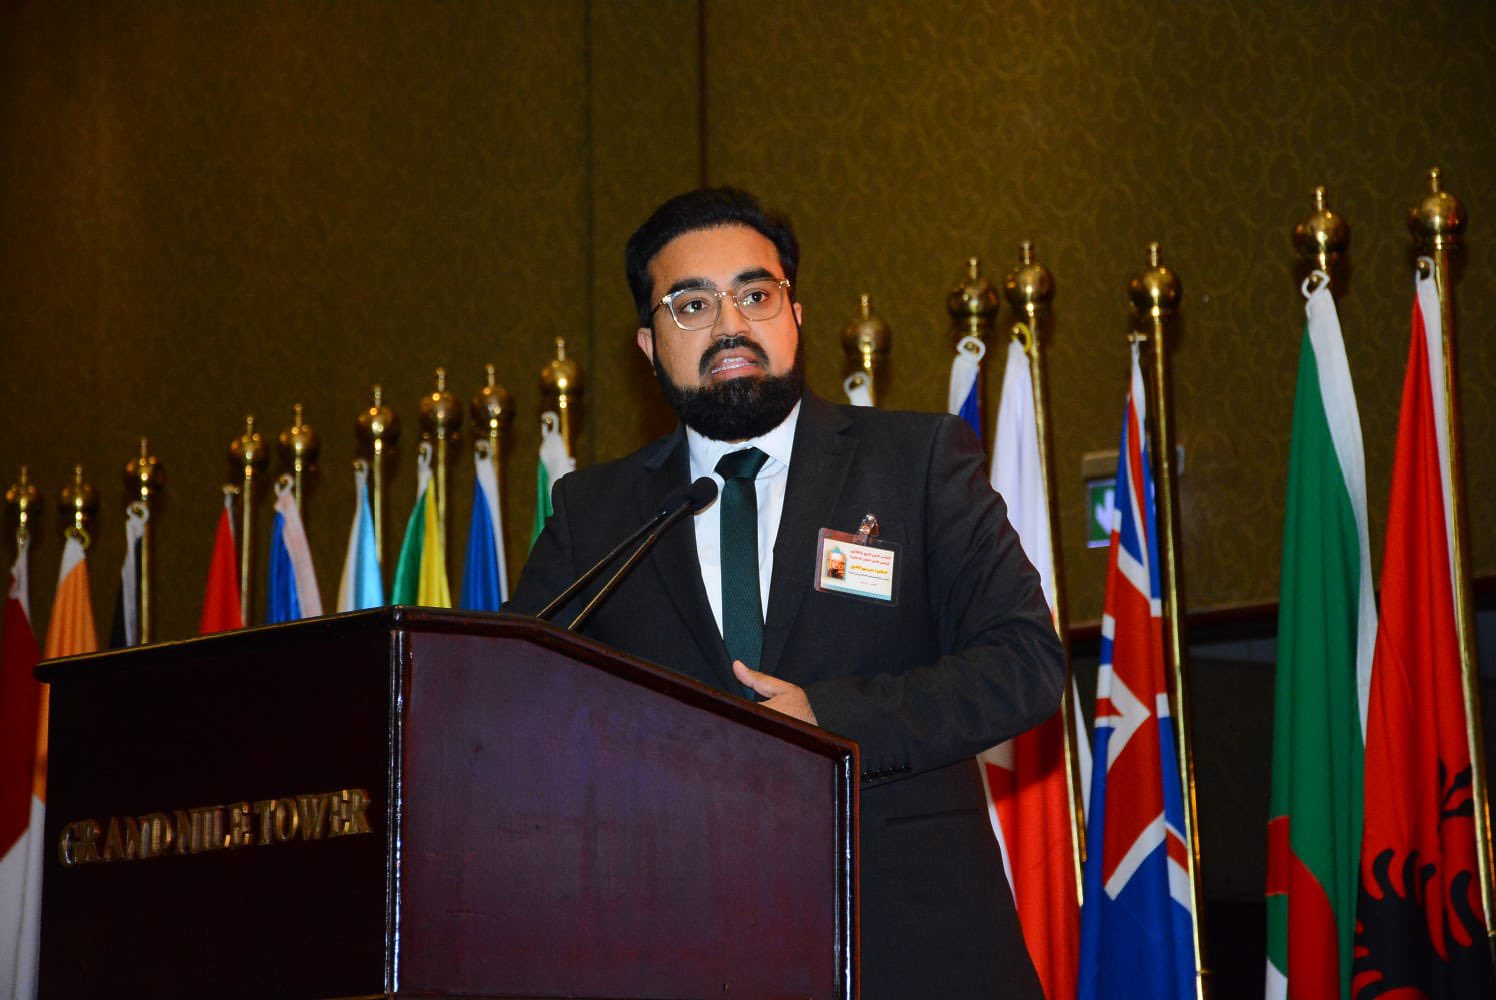 Shaykh Dr Umar Al-Qadri